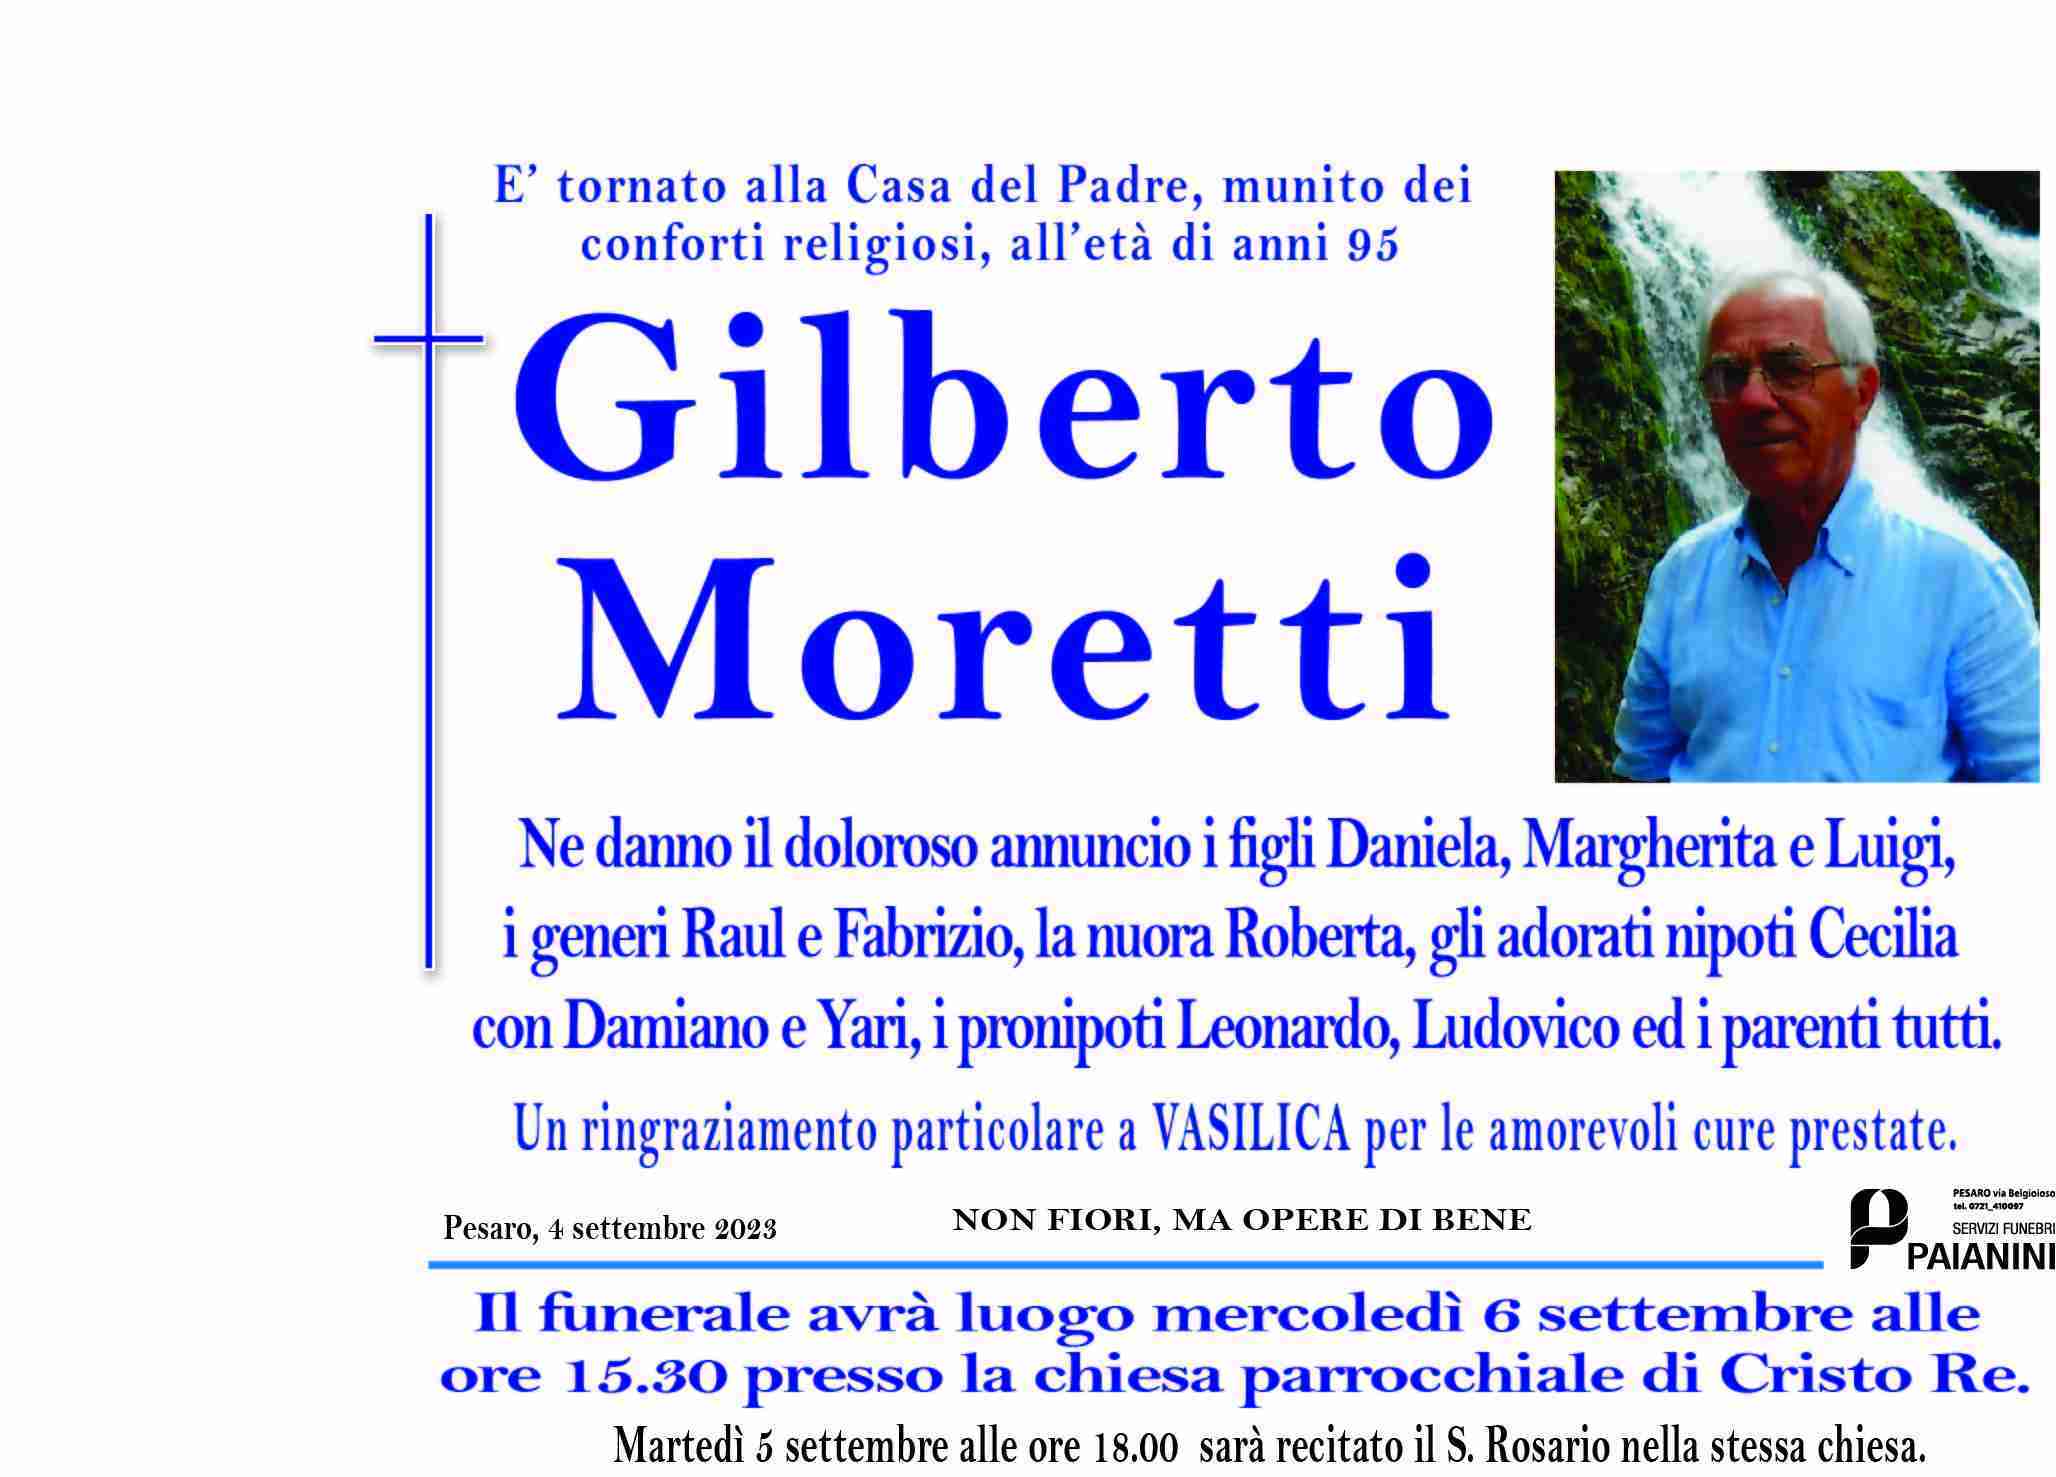 Gilberto Moretti